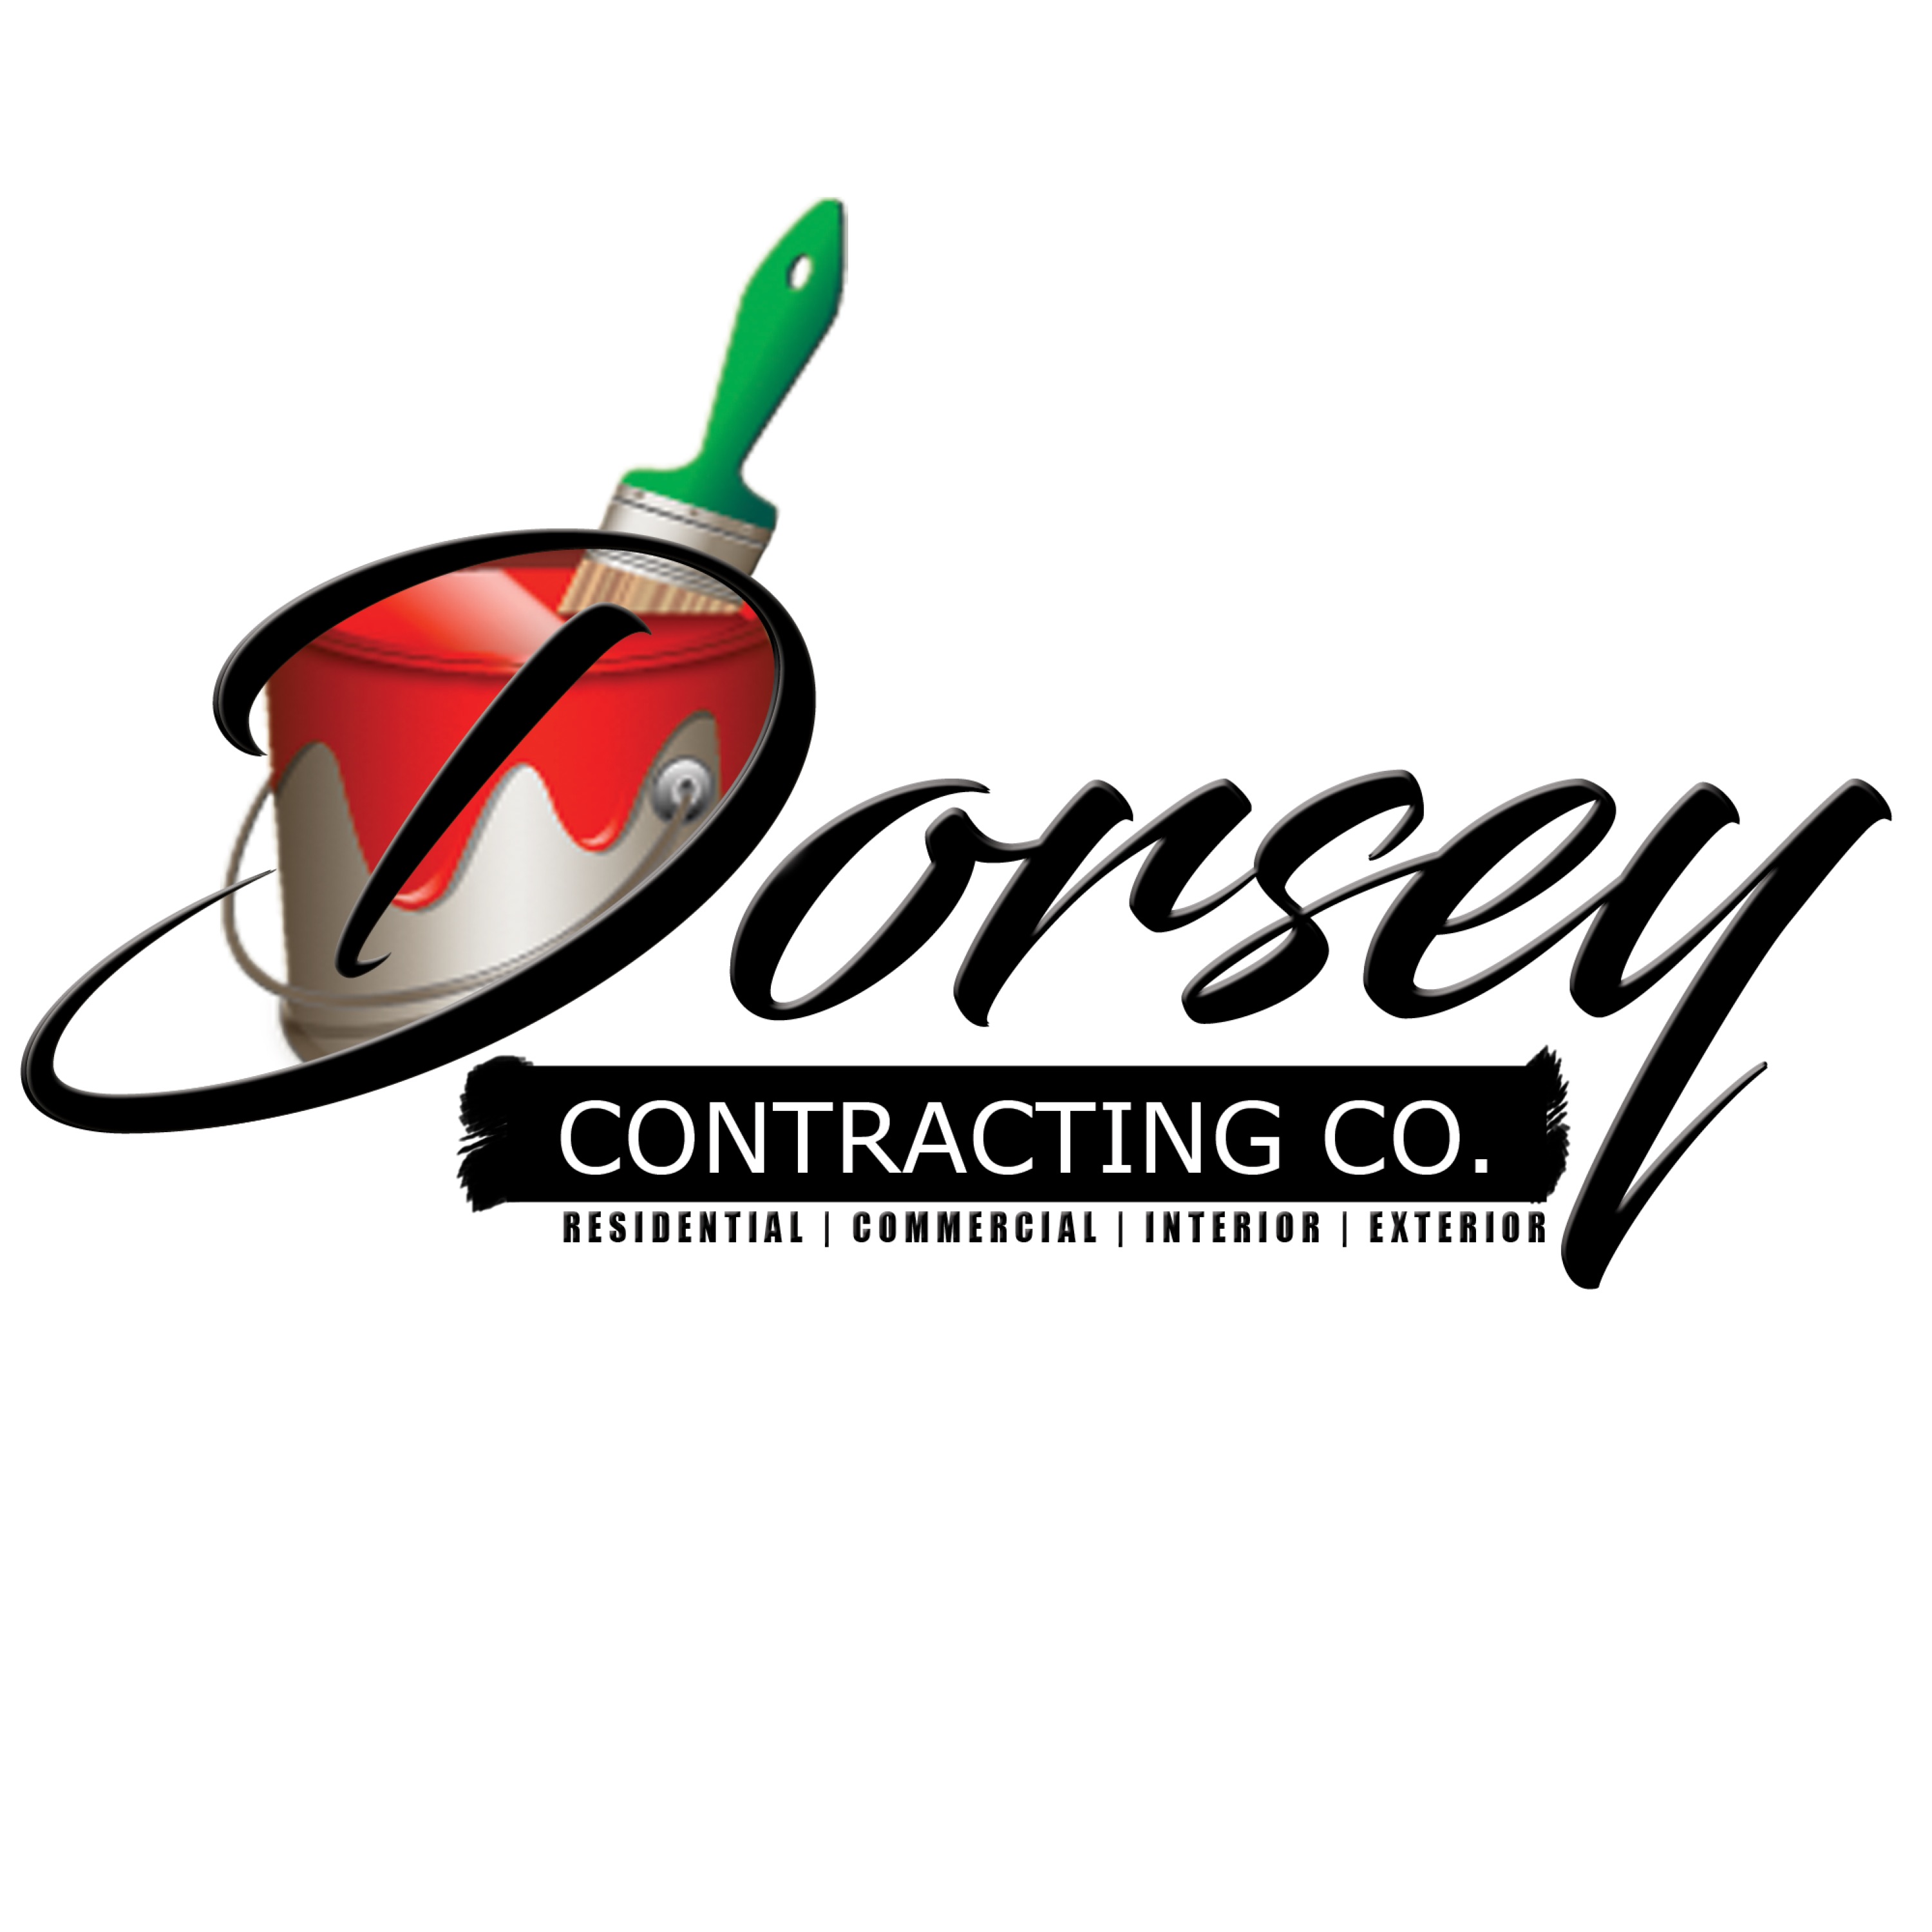 Dorsey Contracting Co. Logo